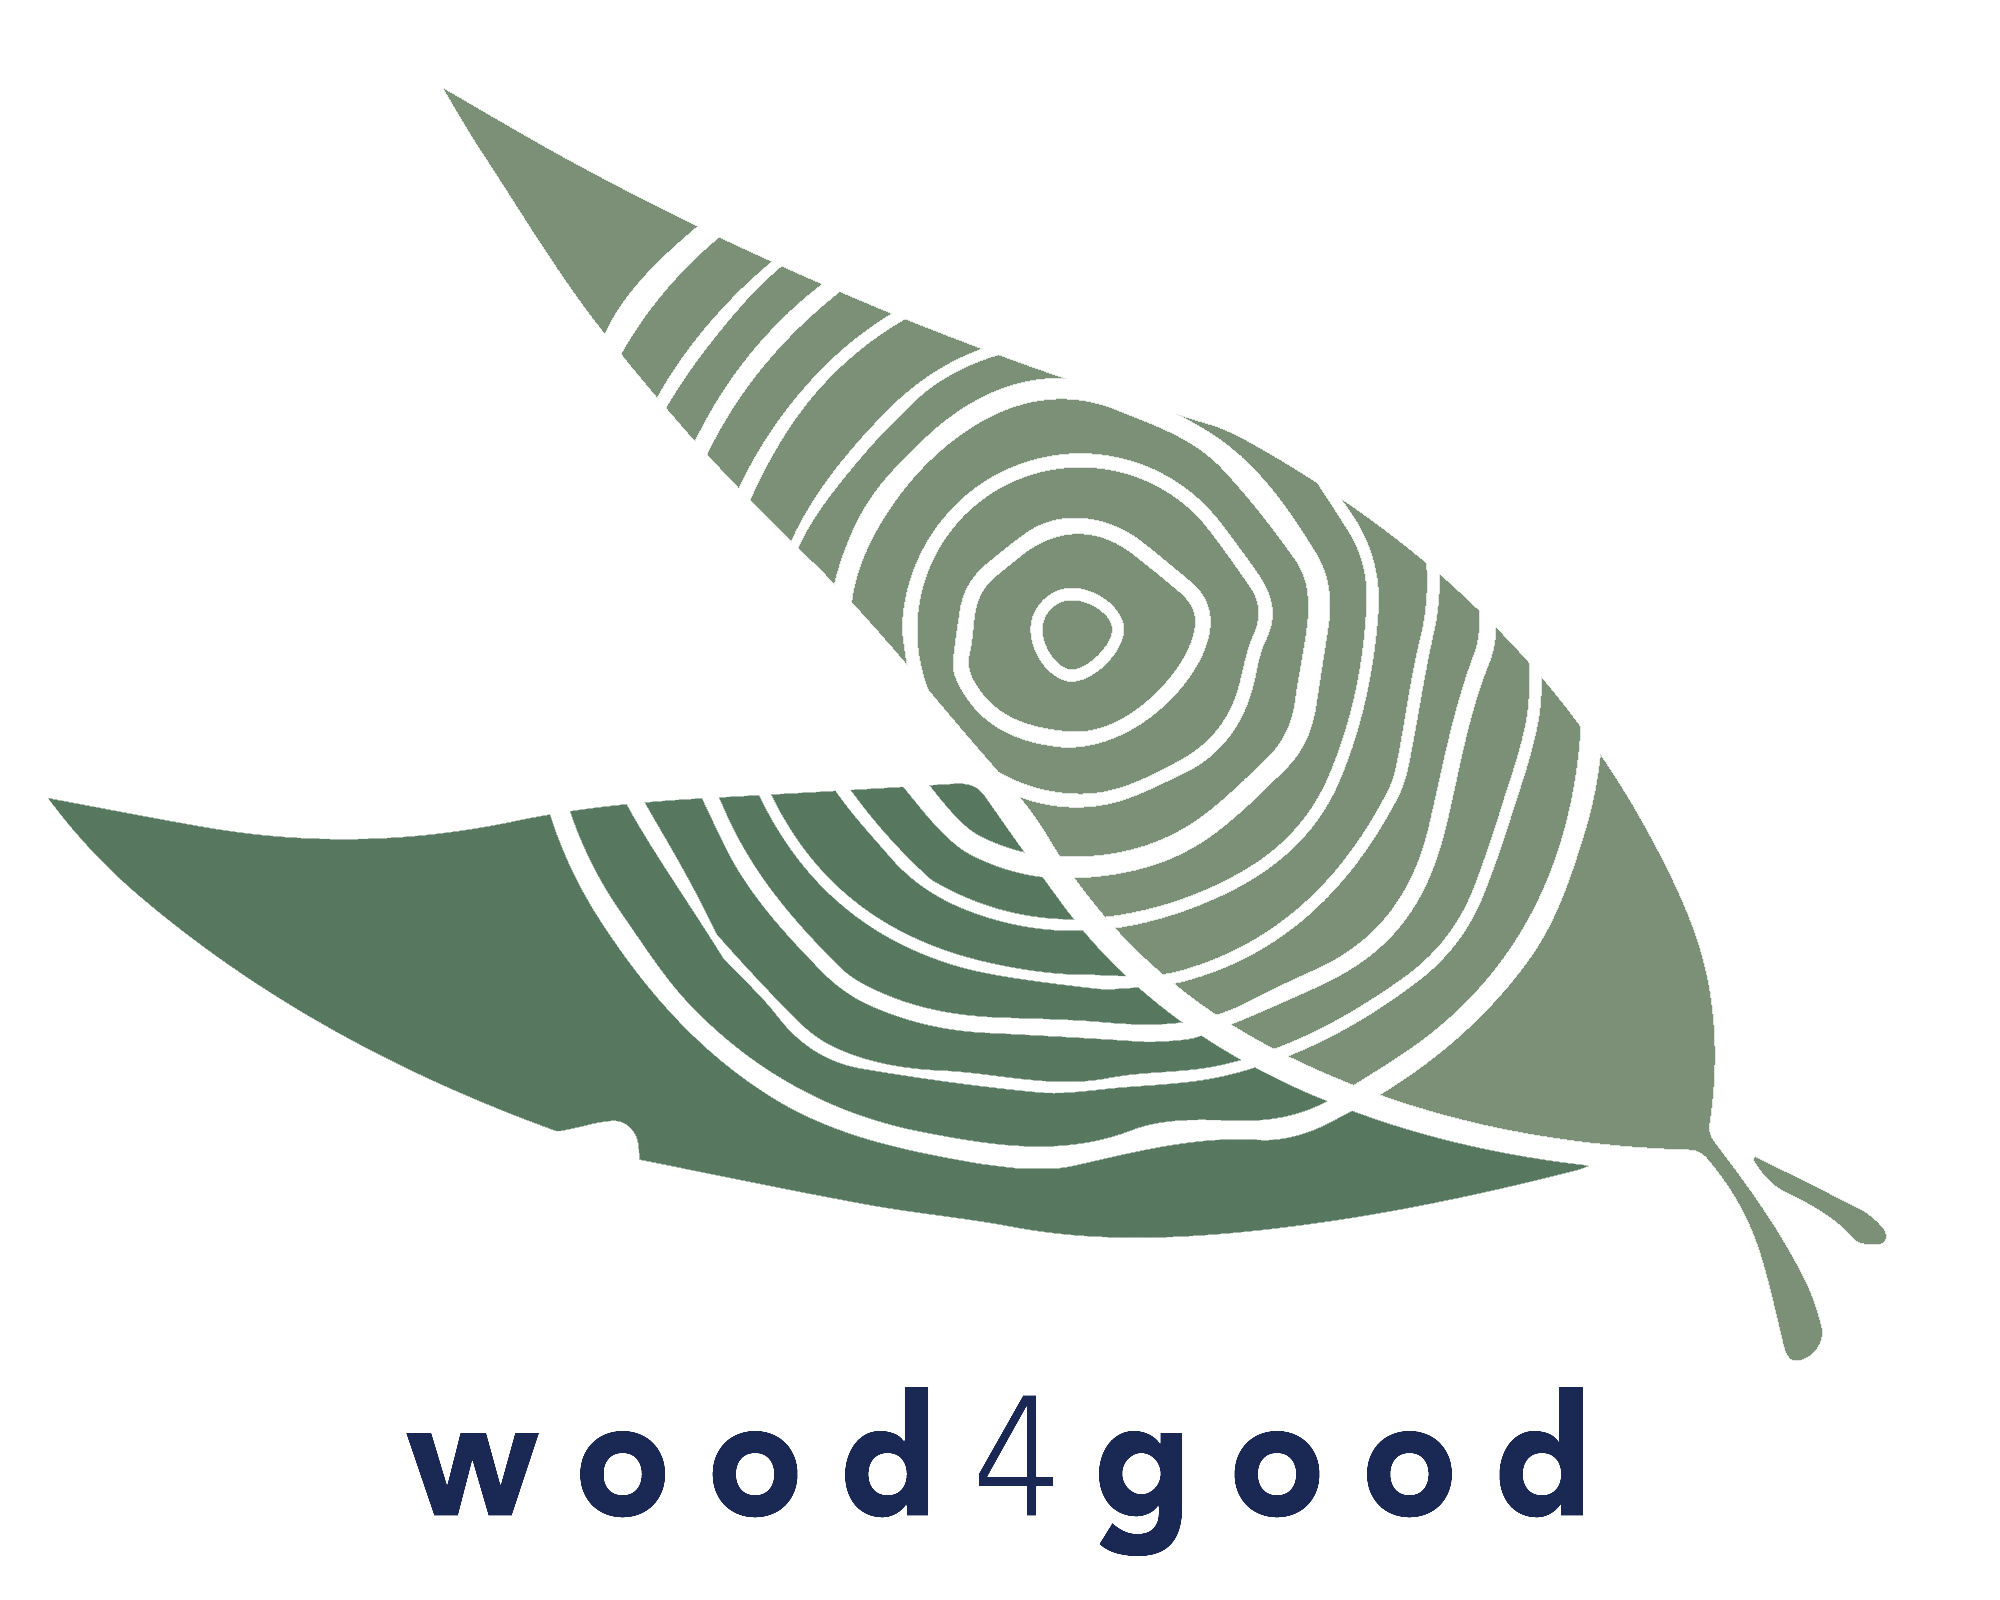 wood4good